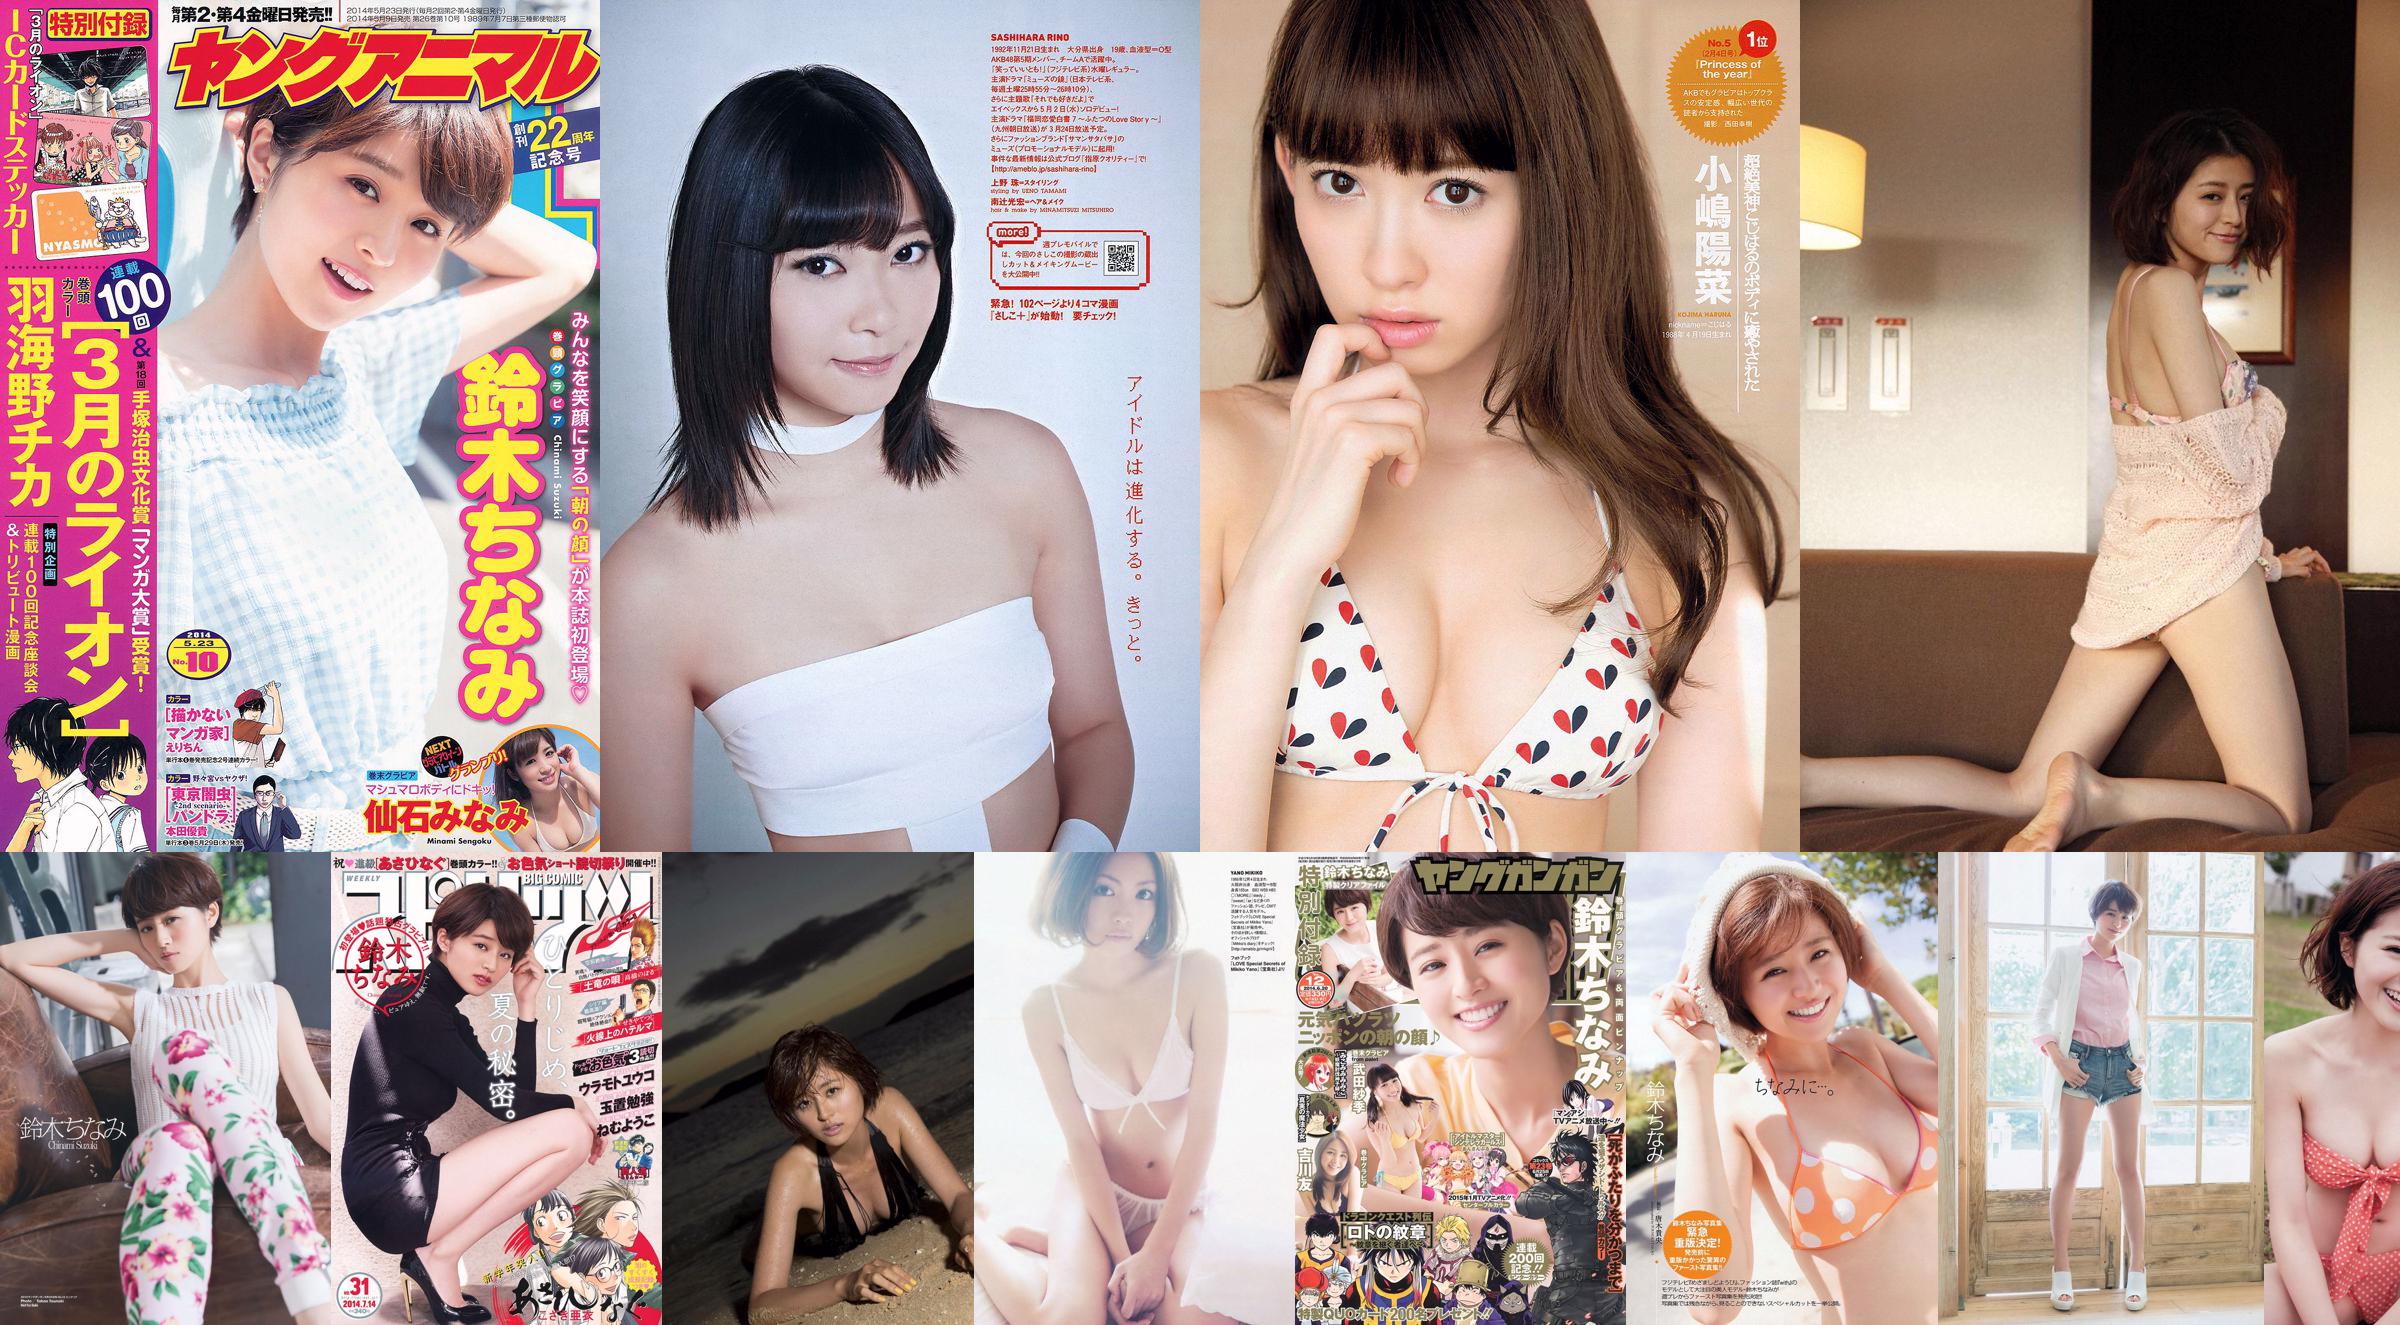 Chinami Suzuki Rina Sawayama Rino Sashihara Atsuko Maeda Nako Mizusawa Alisa [wekelijkse Playboy] 2012 nr. 12 foto No.805c1f Pagina 2